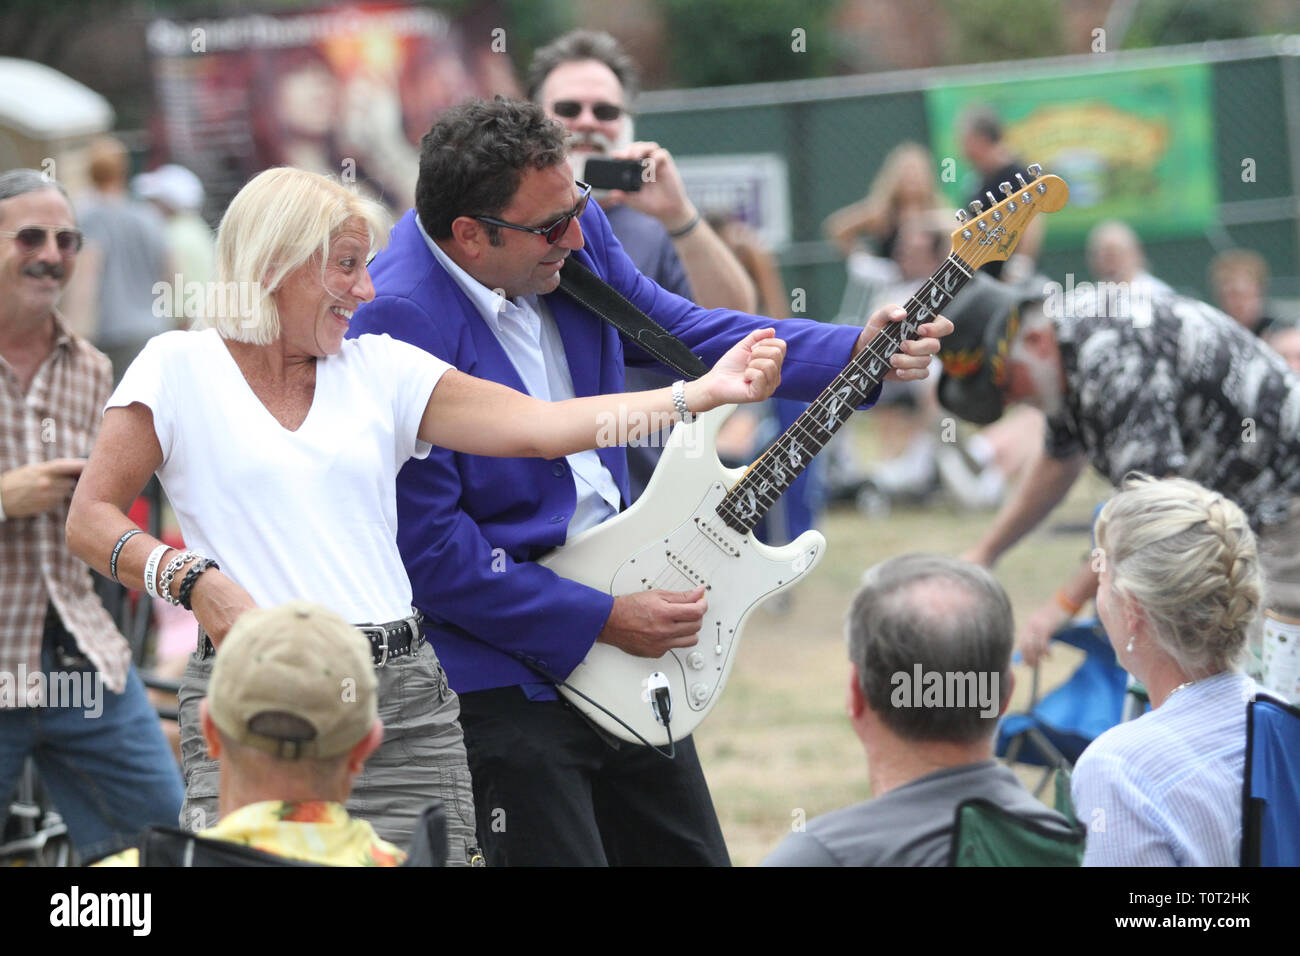 Un concerto ventola è mostrato air guitaring lungo con il chitarrista Jeff Pitchell durante un concerto all'aperto le prestazioni. Foto Stock